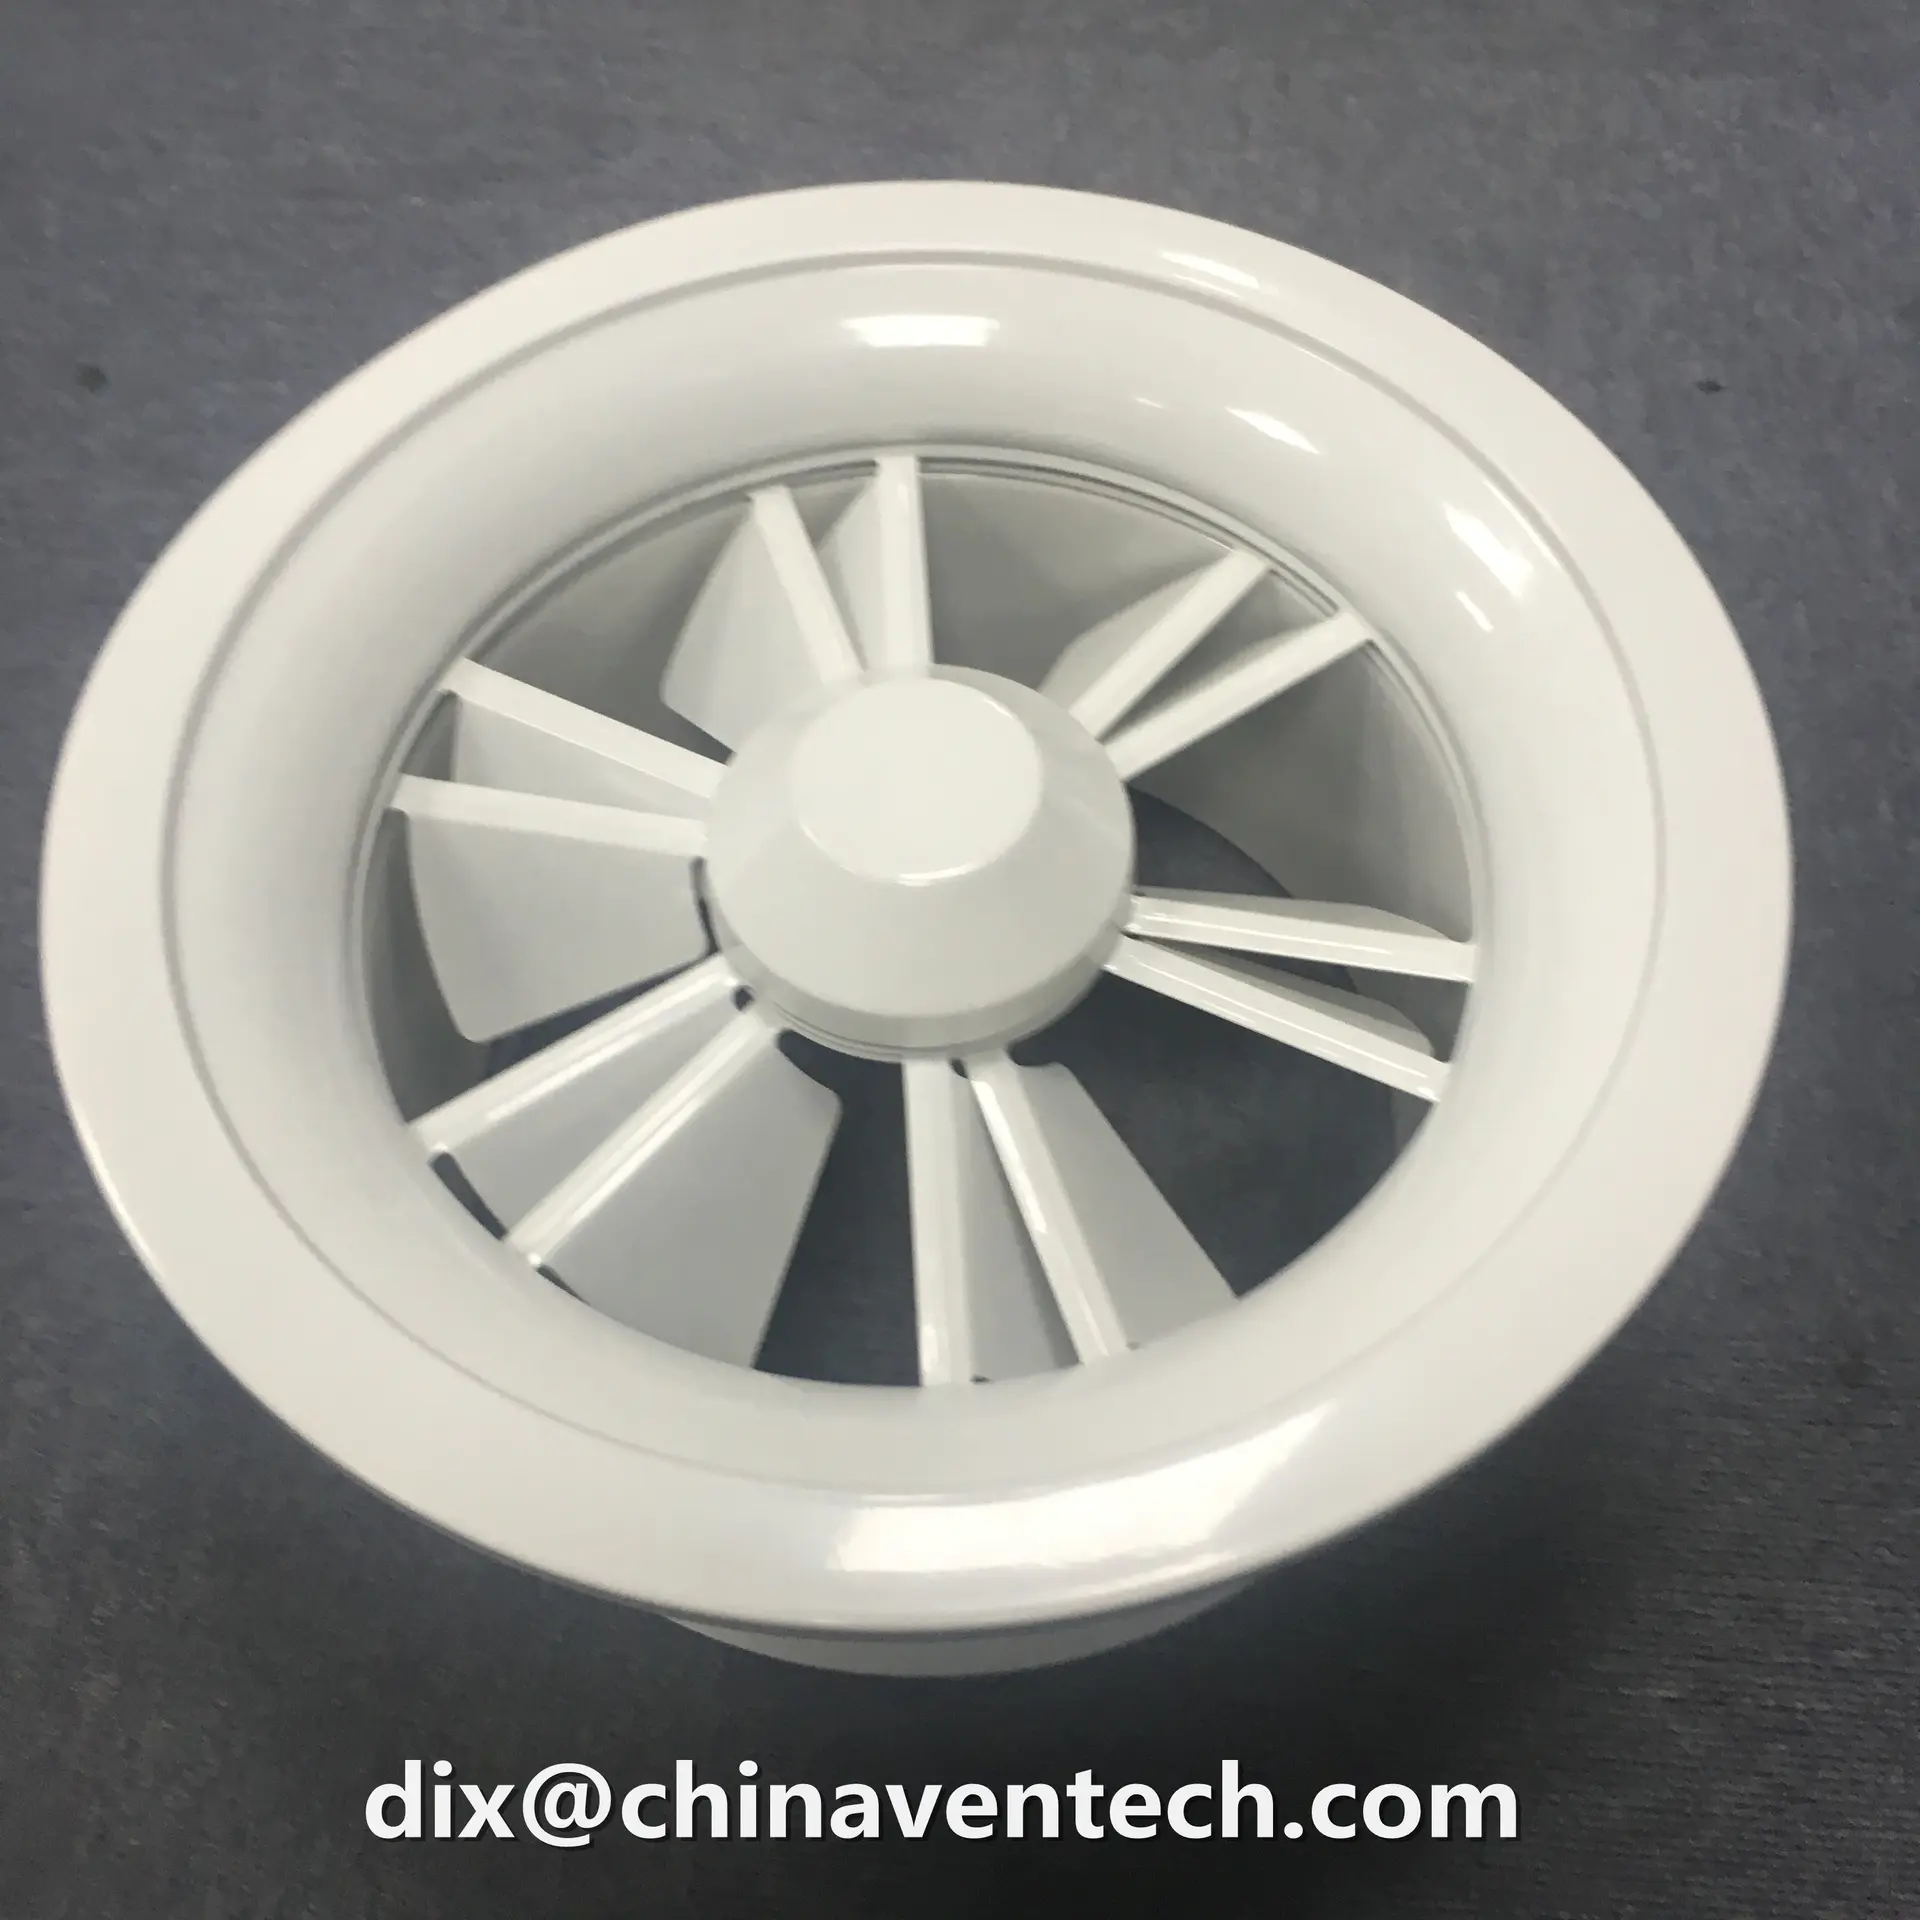 hvac aluminum round jet nozzle volume control circular swirl diffuser